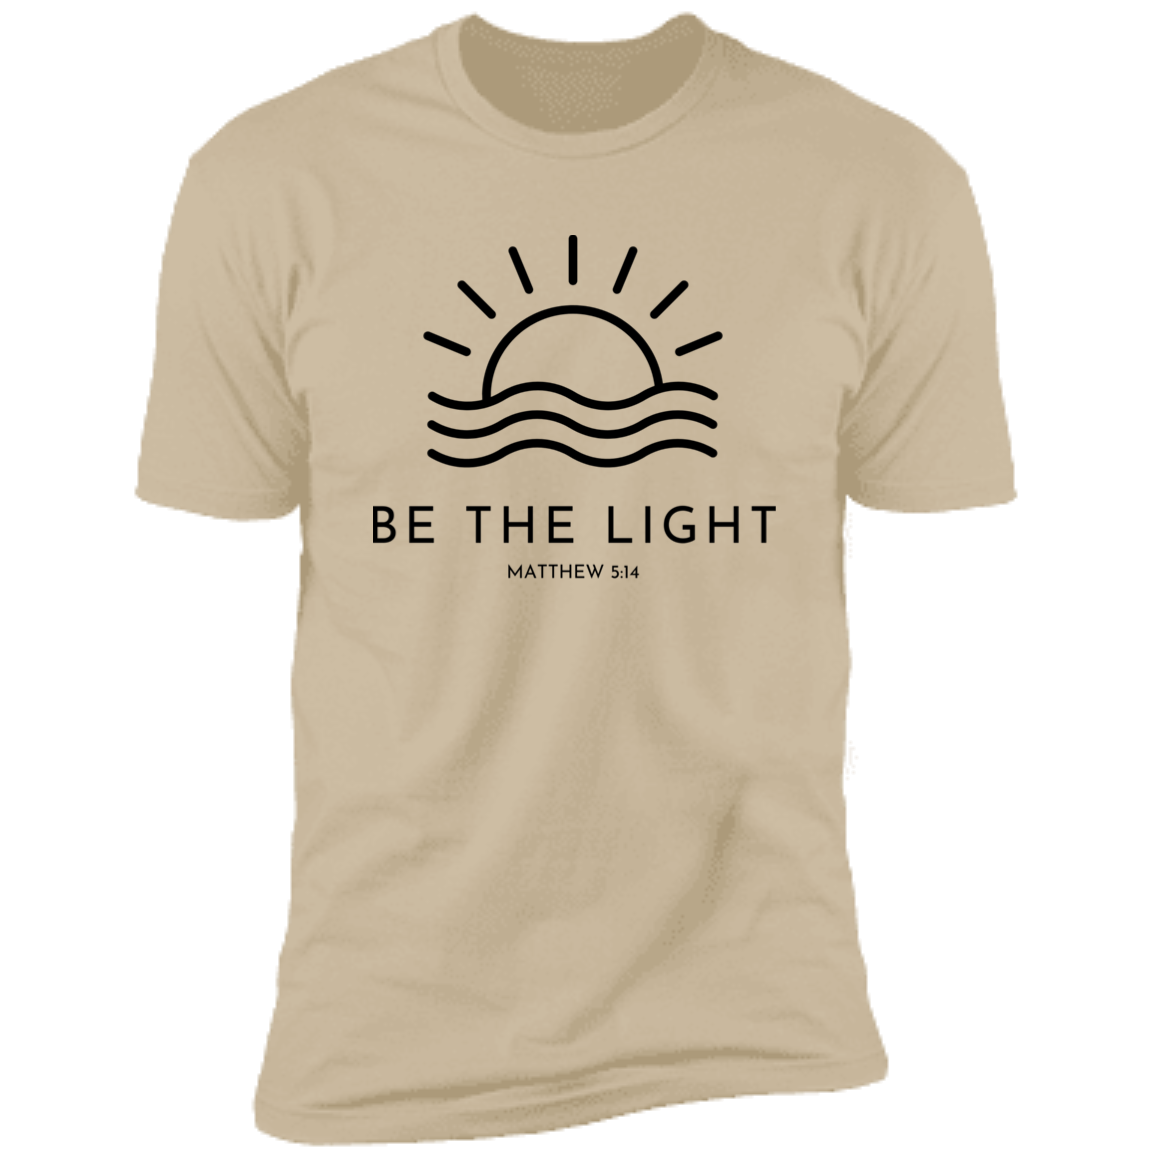 Be the Light Premium Short Sleeve T-Shirt black lettering